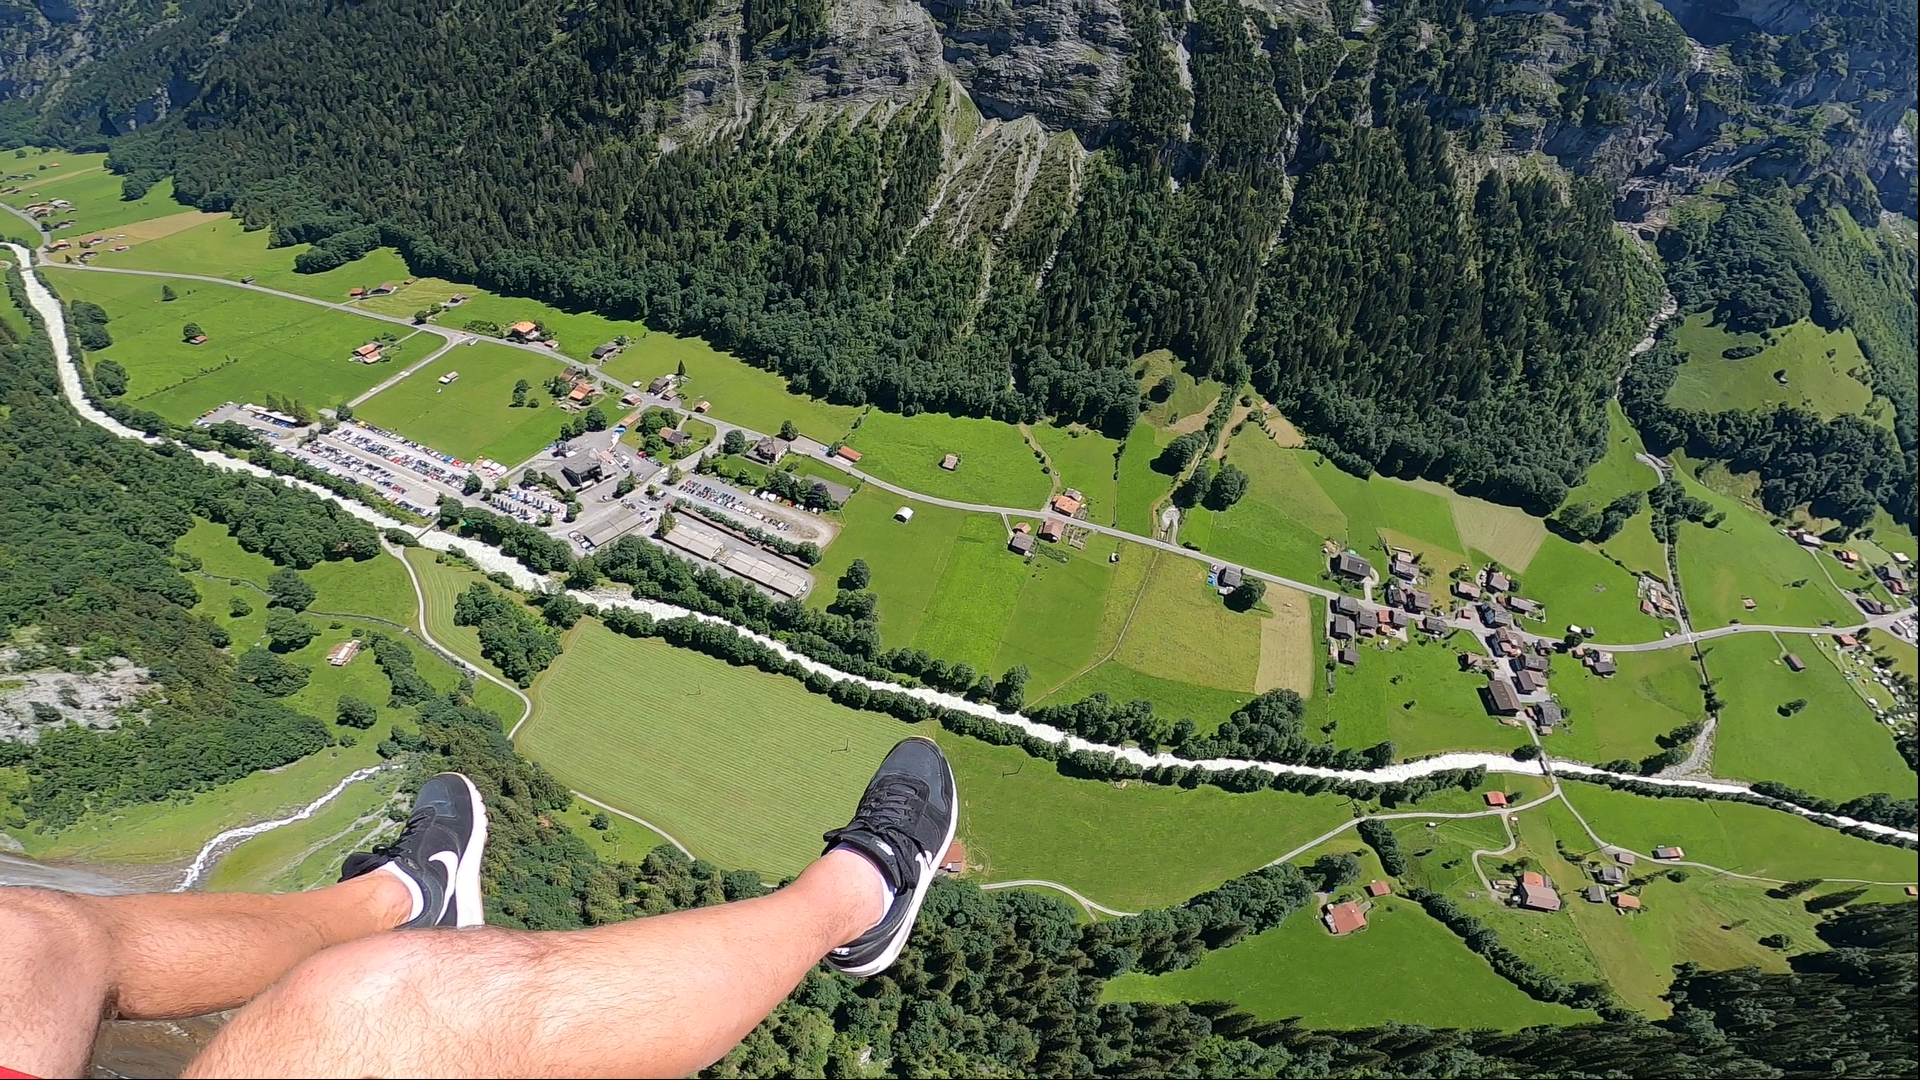 Paragliding Switzerland Lauterbrunnen